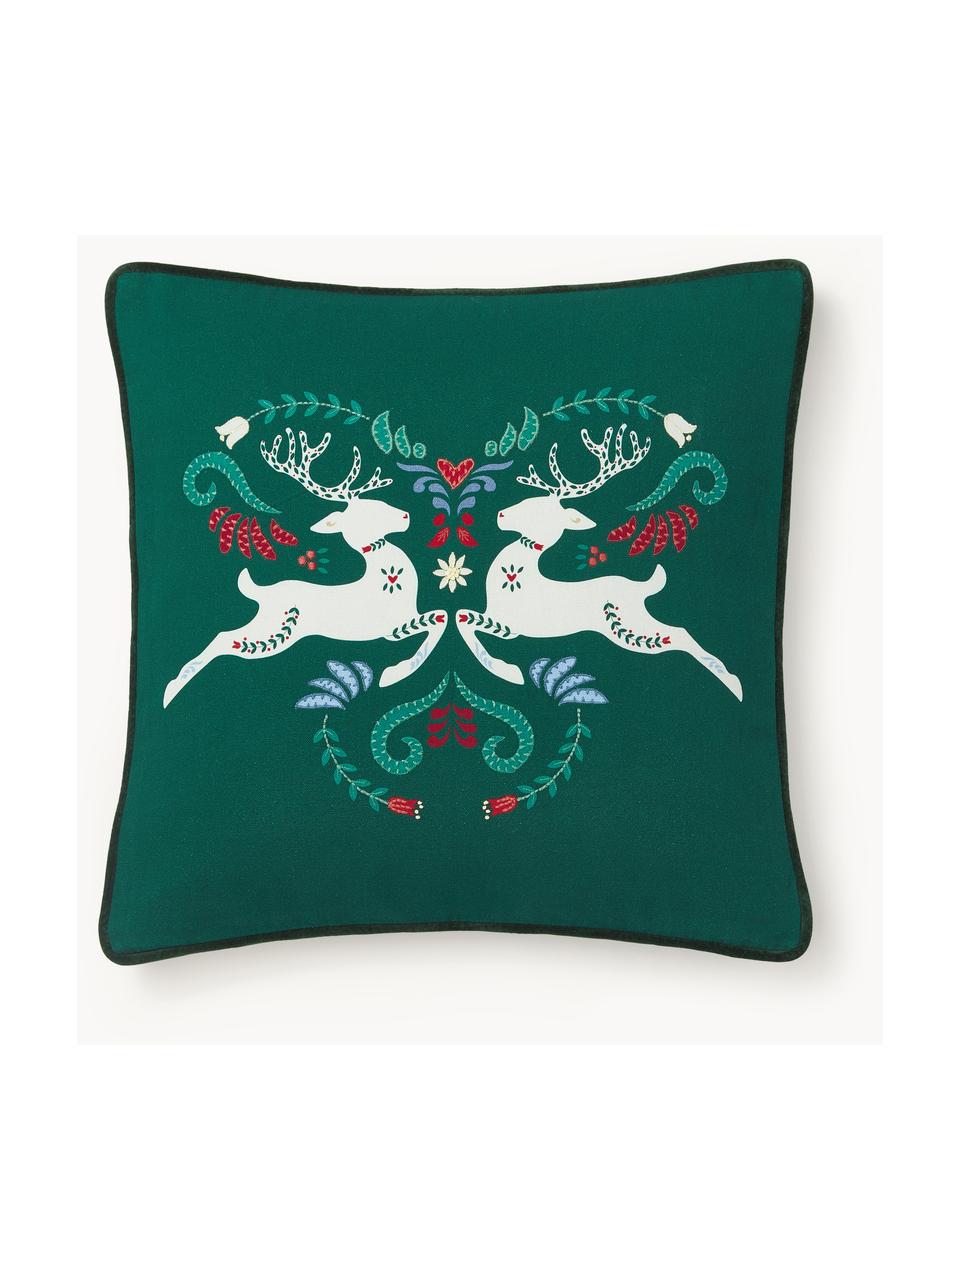 Copricuscino con motivo invernale Deers, Rivestimento: 100% cotone, Verde scuro, bianco, rosso, Larg. 45 x Lung. 45 cm